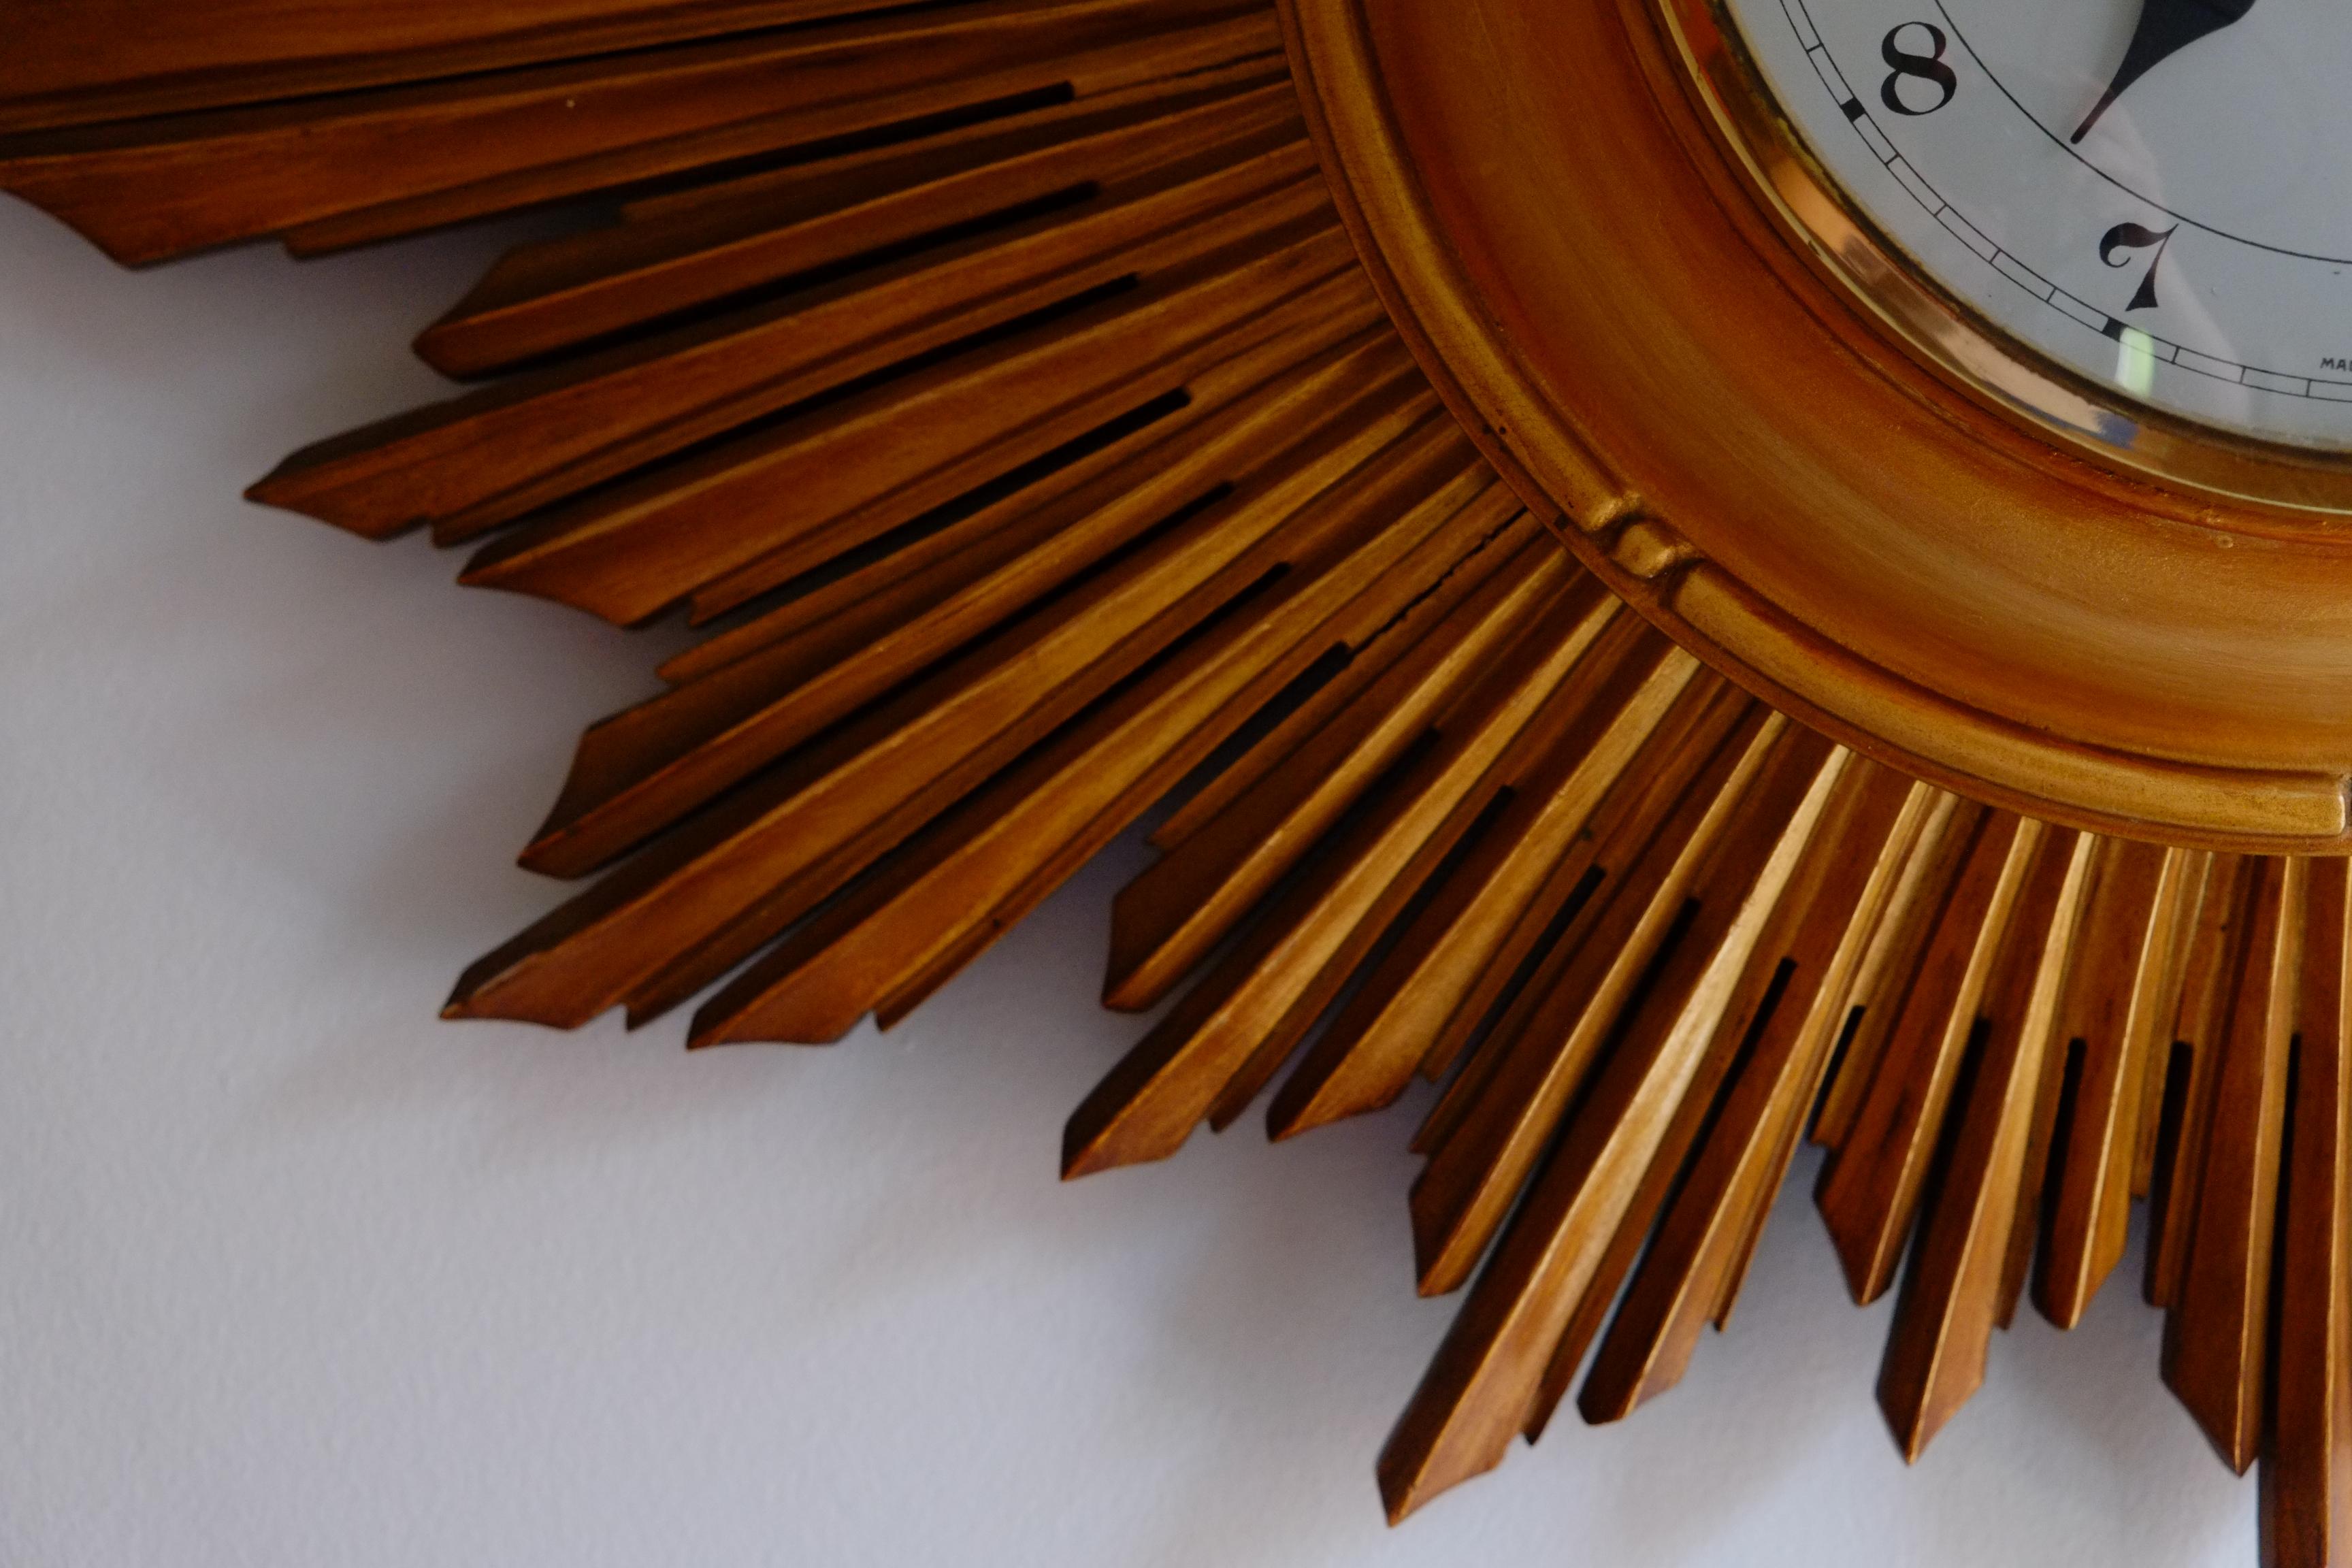 Hêtre Rare horloge murale Smiths en bois doré Sunburst. Fabriqué en Angleterre en vente